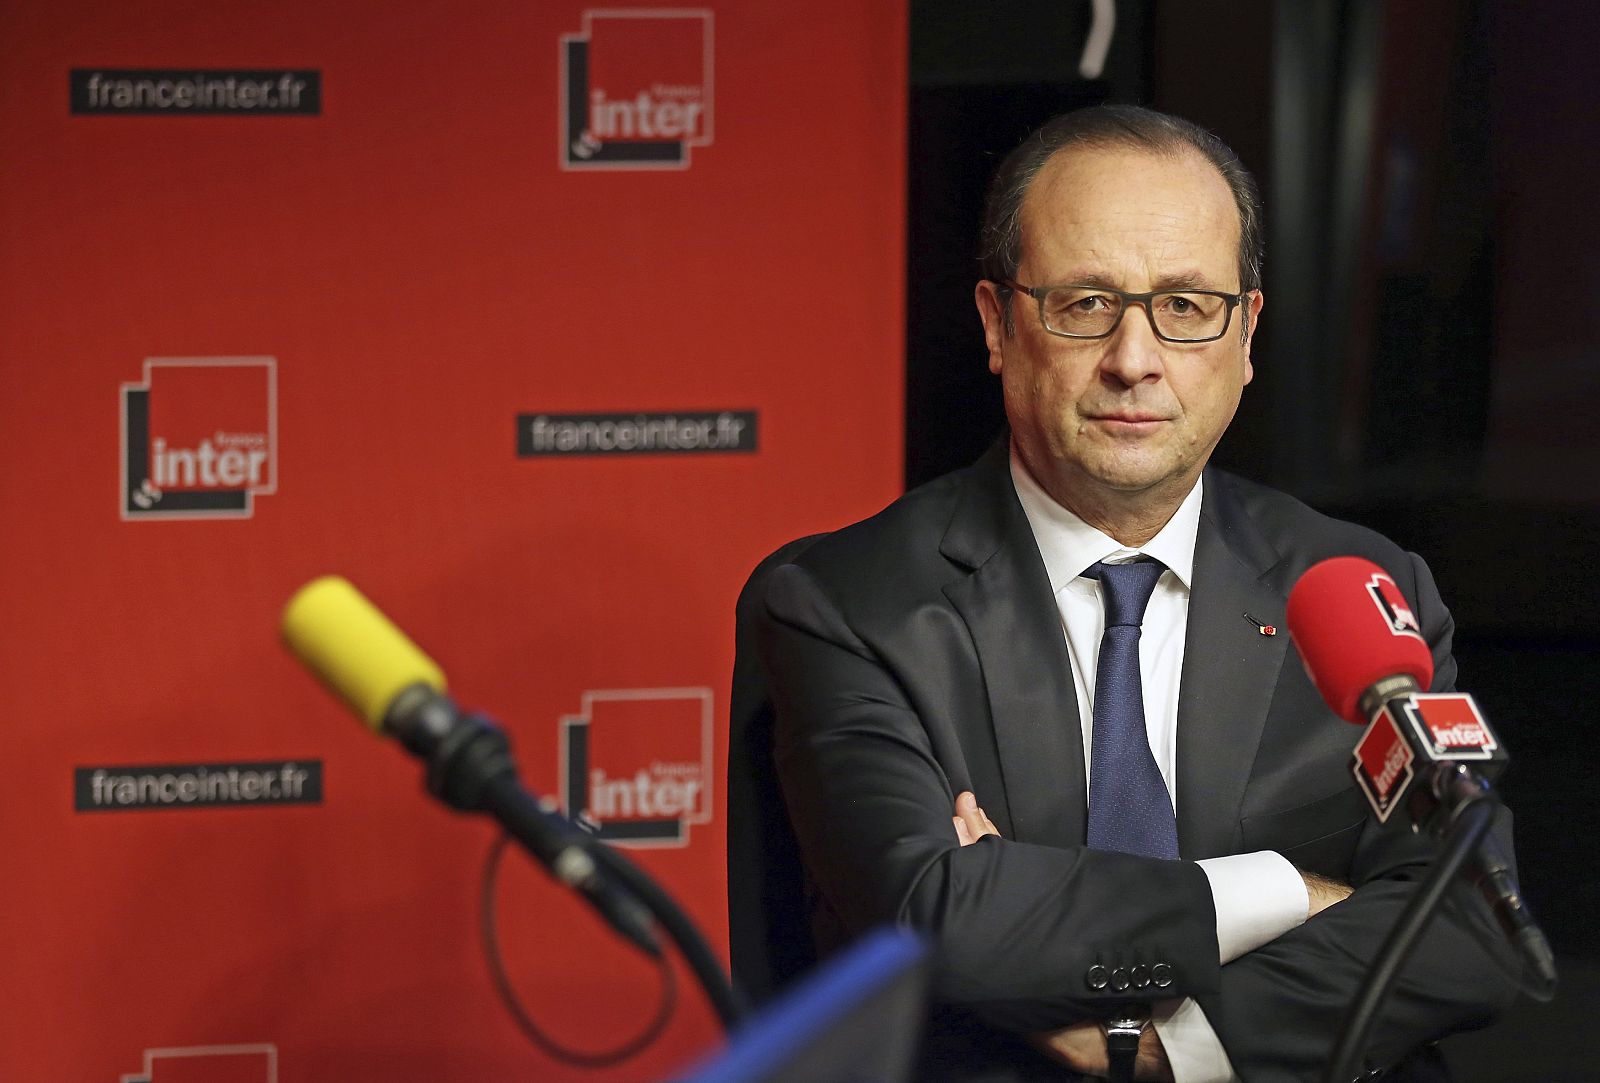 El presidente francés, François Hollande, en la entrevista en France Inter